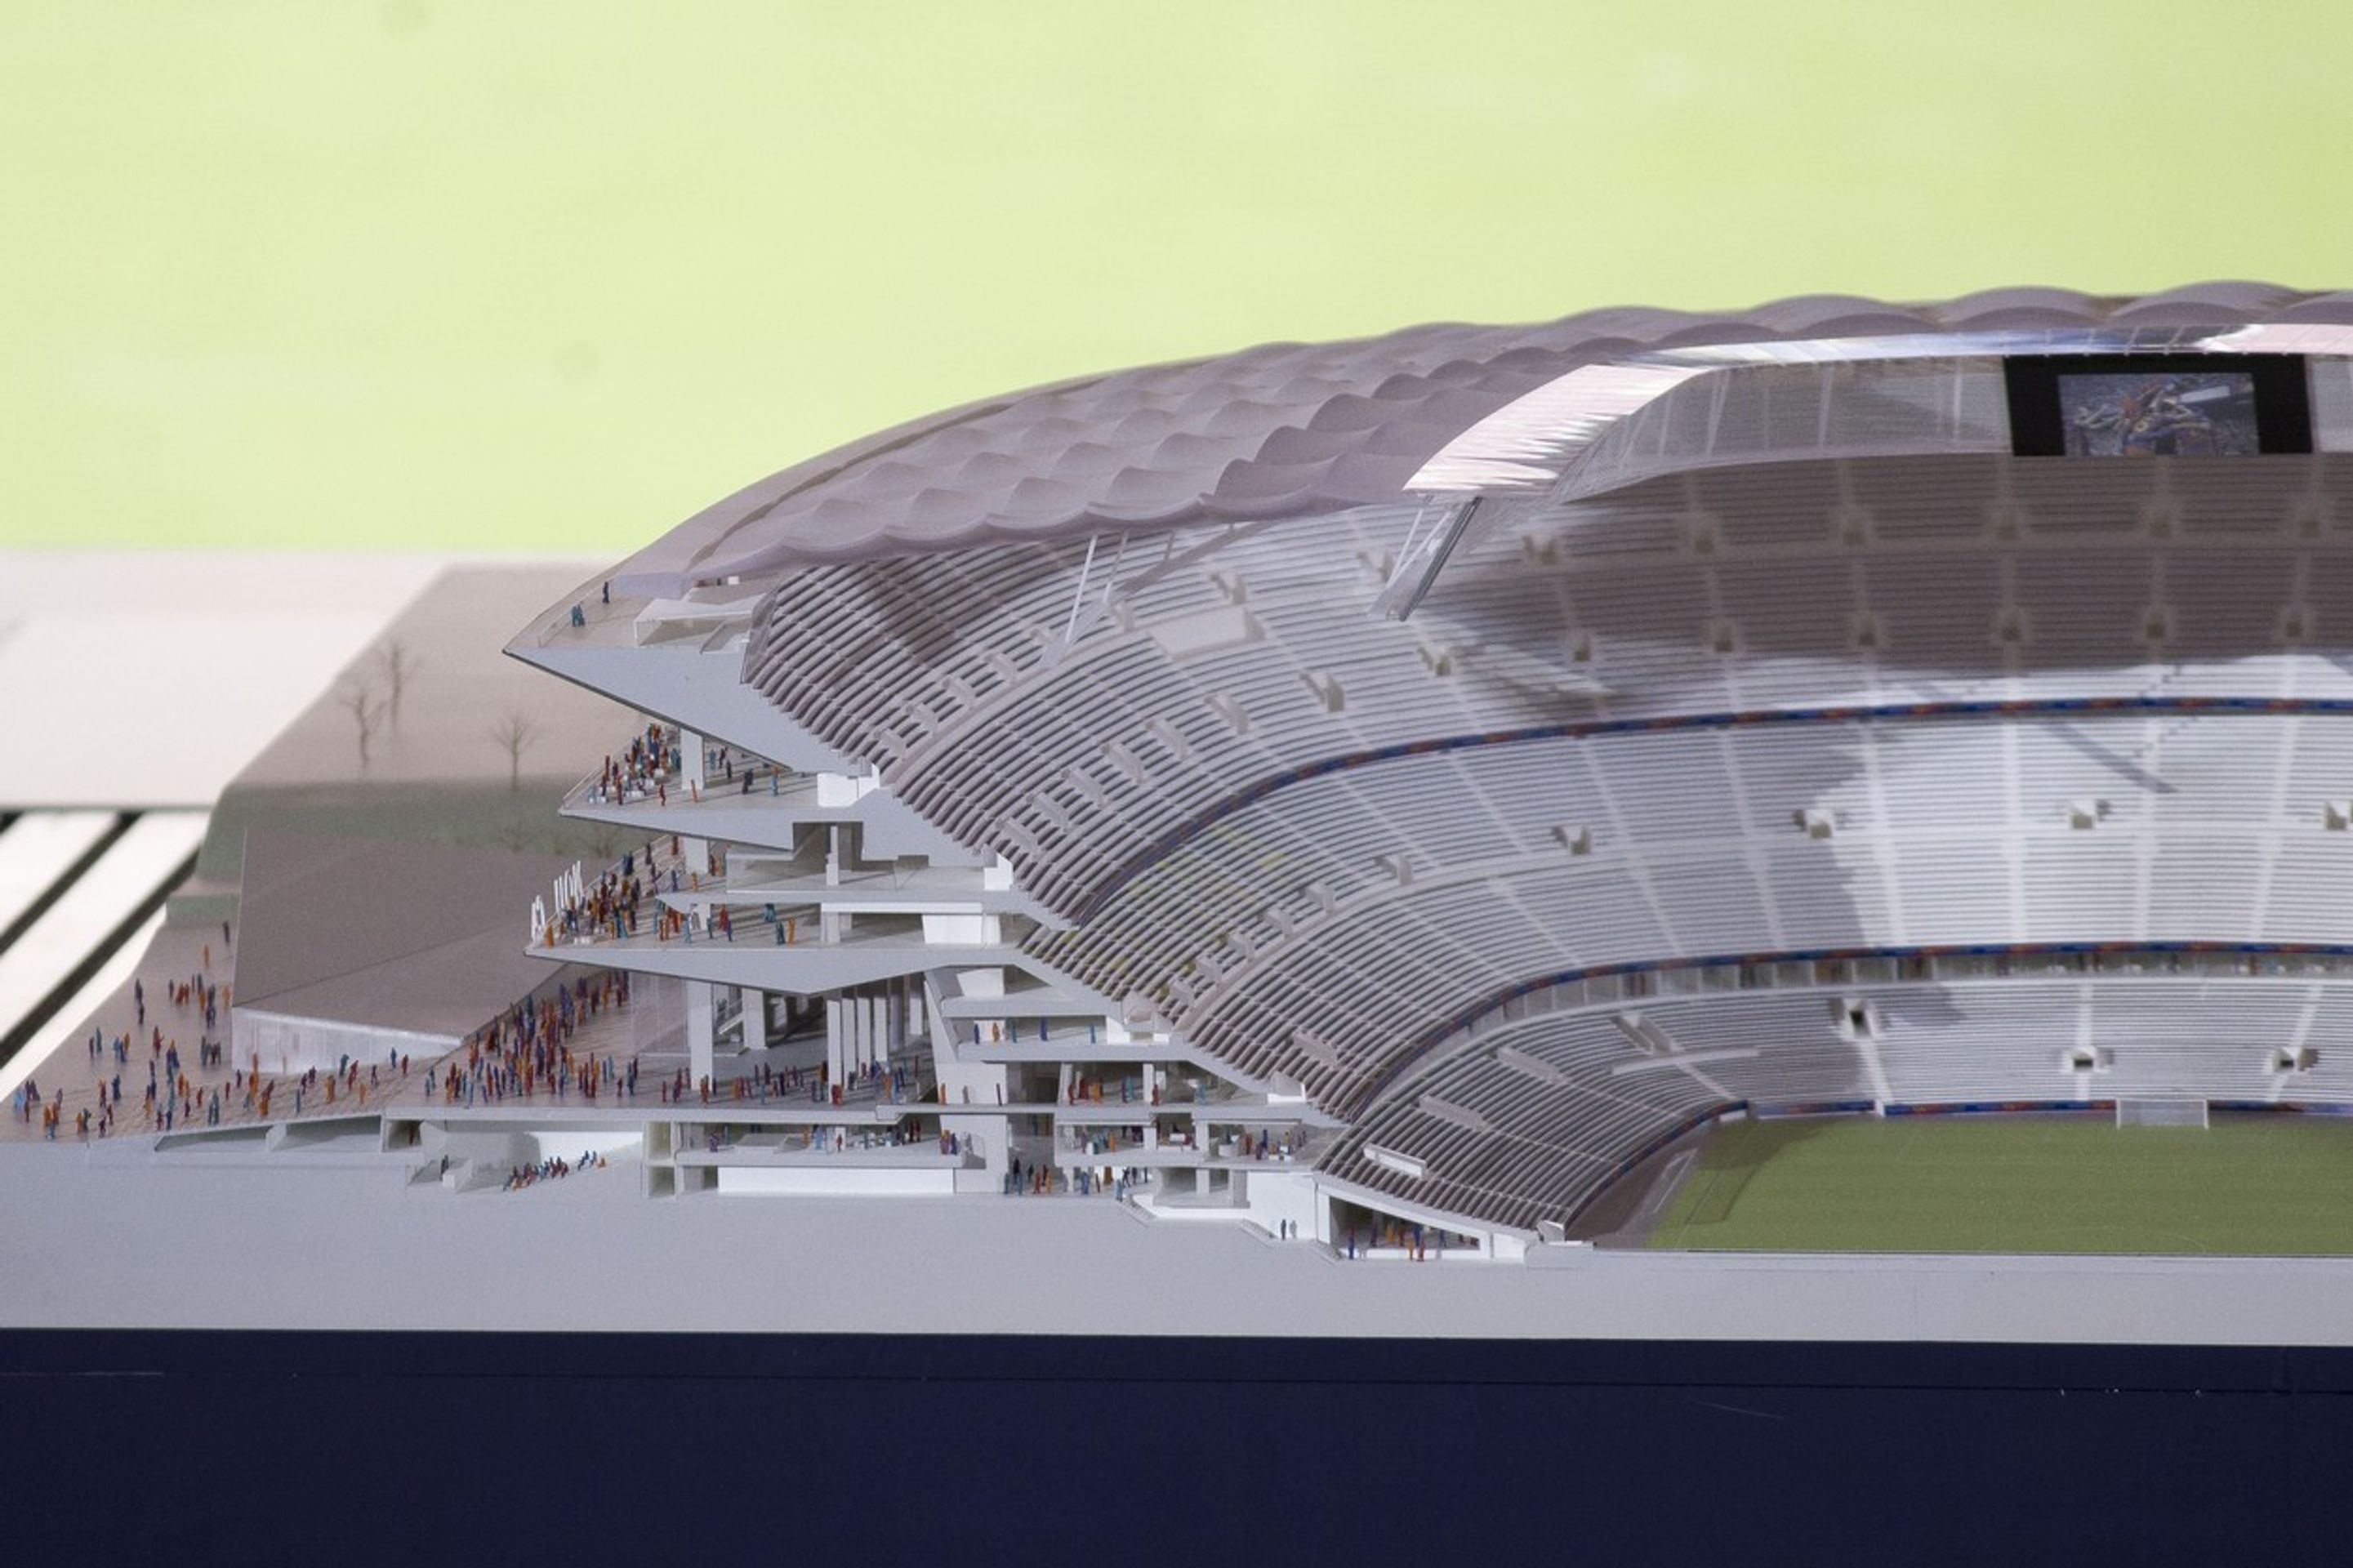 Takhle bude vypadat nový stadion Barcelony - 4 - GALERIE: Takhle bude vypadat nový stadion Barcelony (2/6)